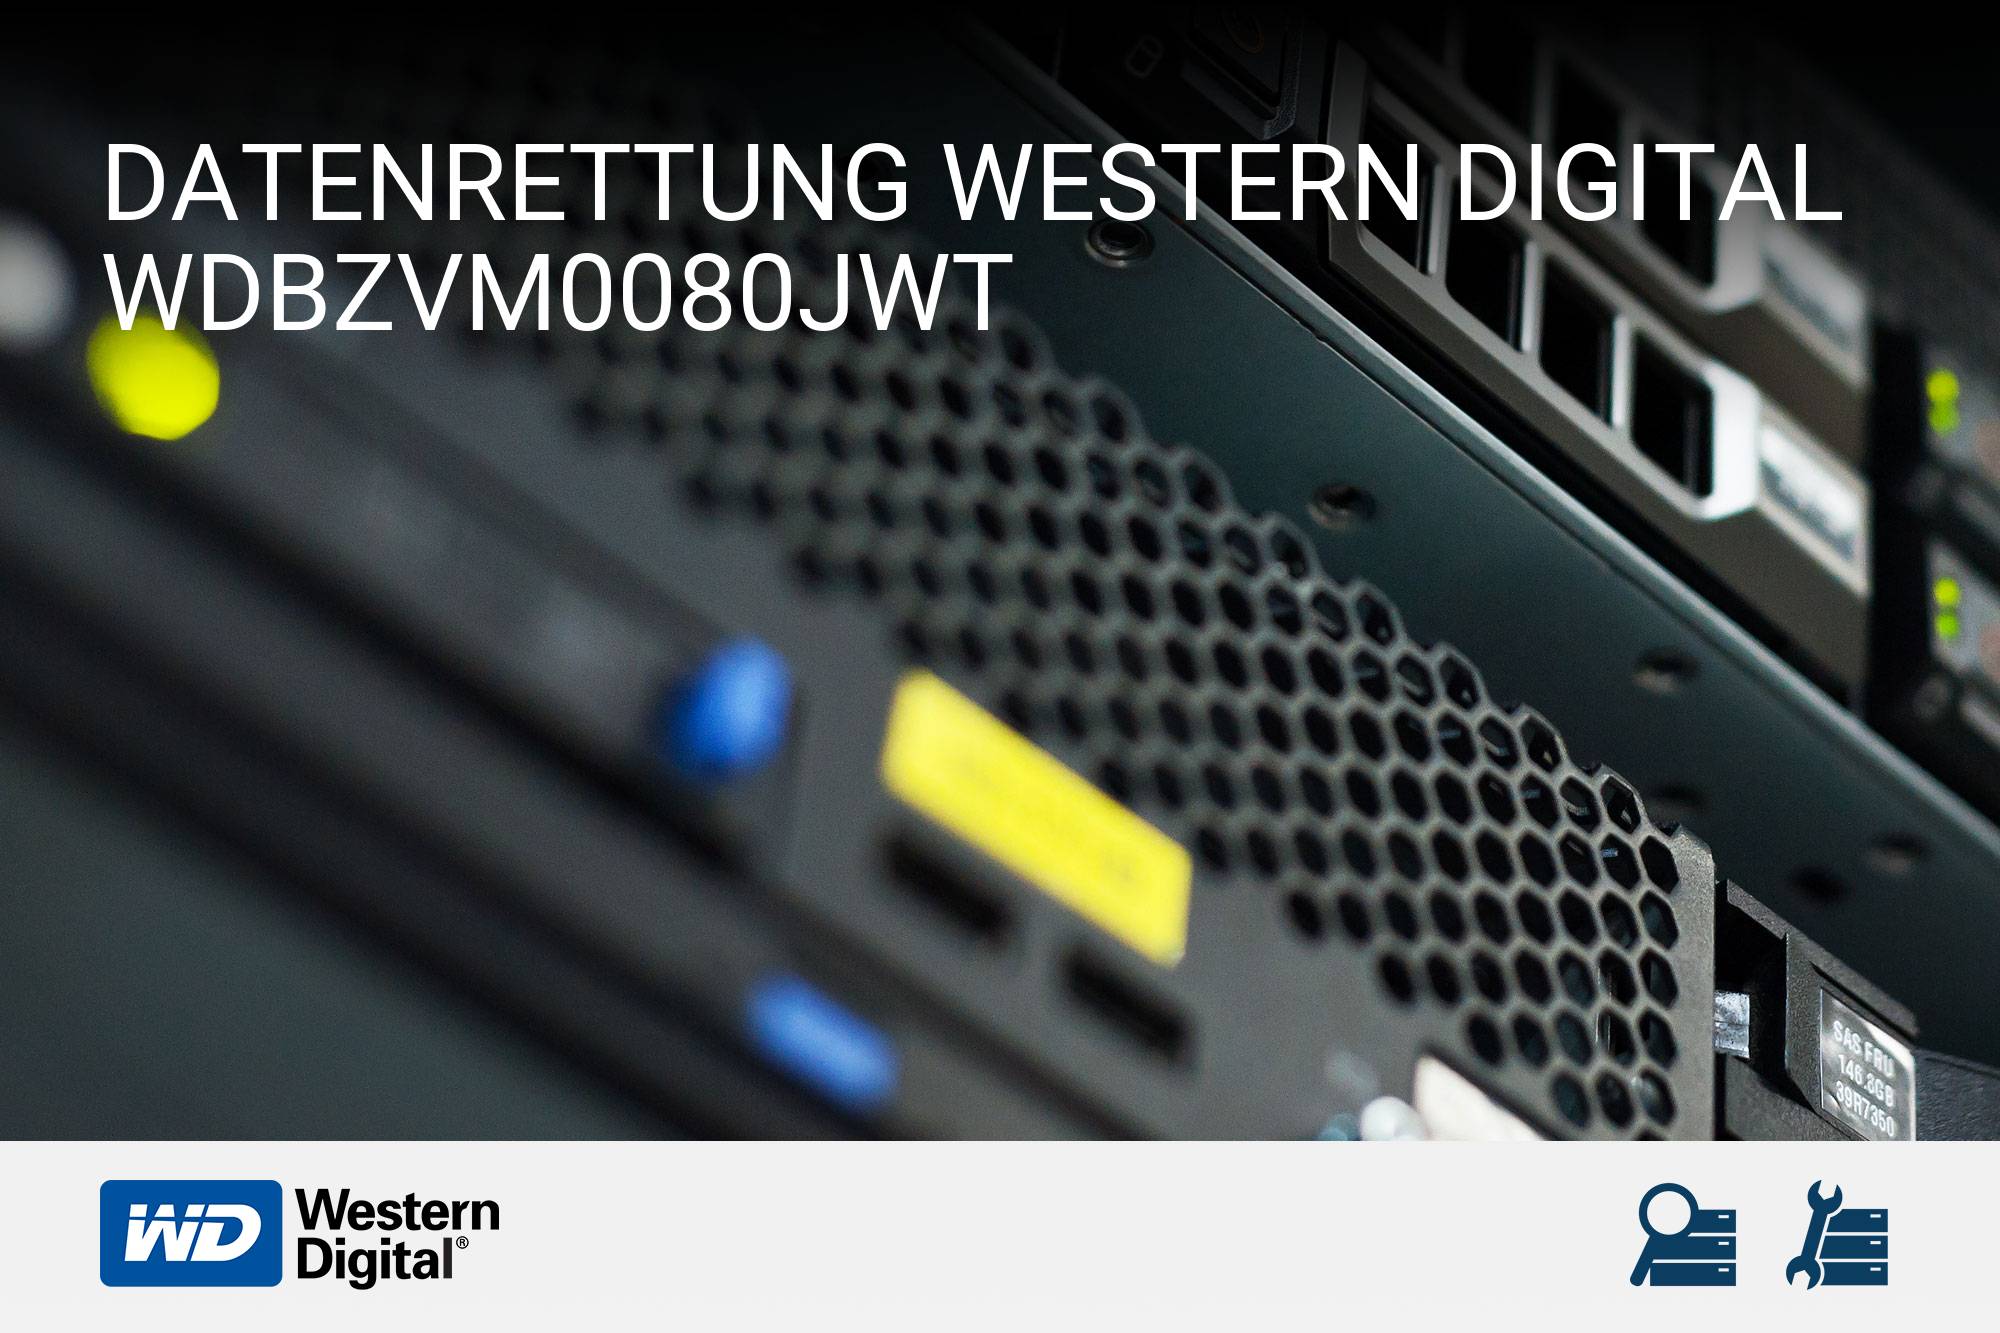 Western Digital WDBZVM0080JWT